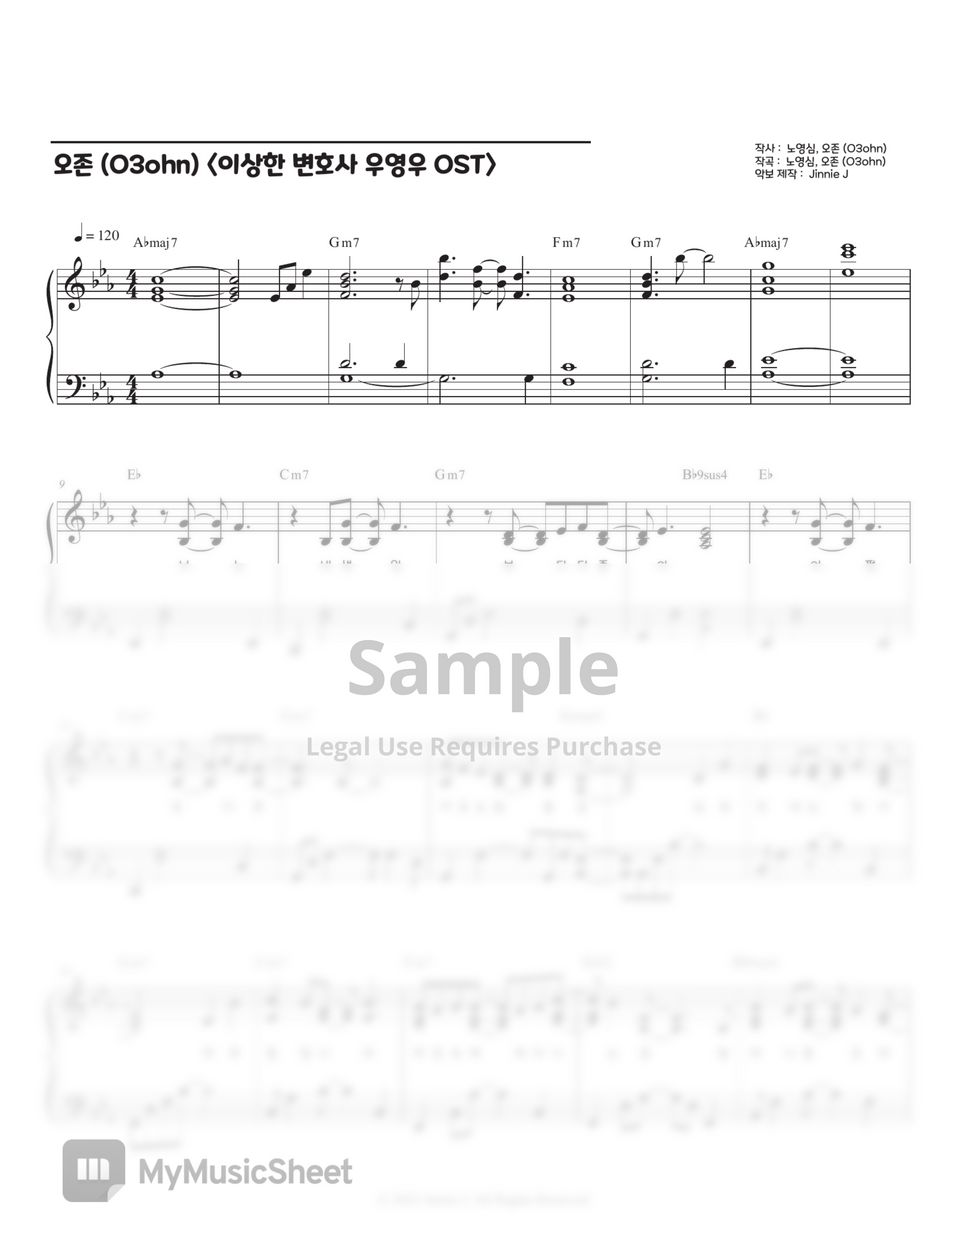 오존 (O3ohn) - Better Than Birthday (Extraordinary Attorney Woo OST) by Jinnie J